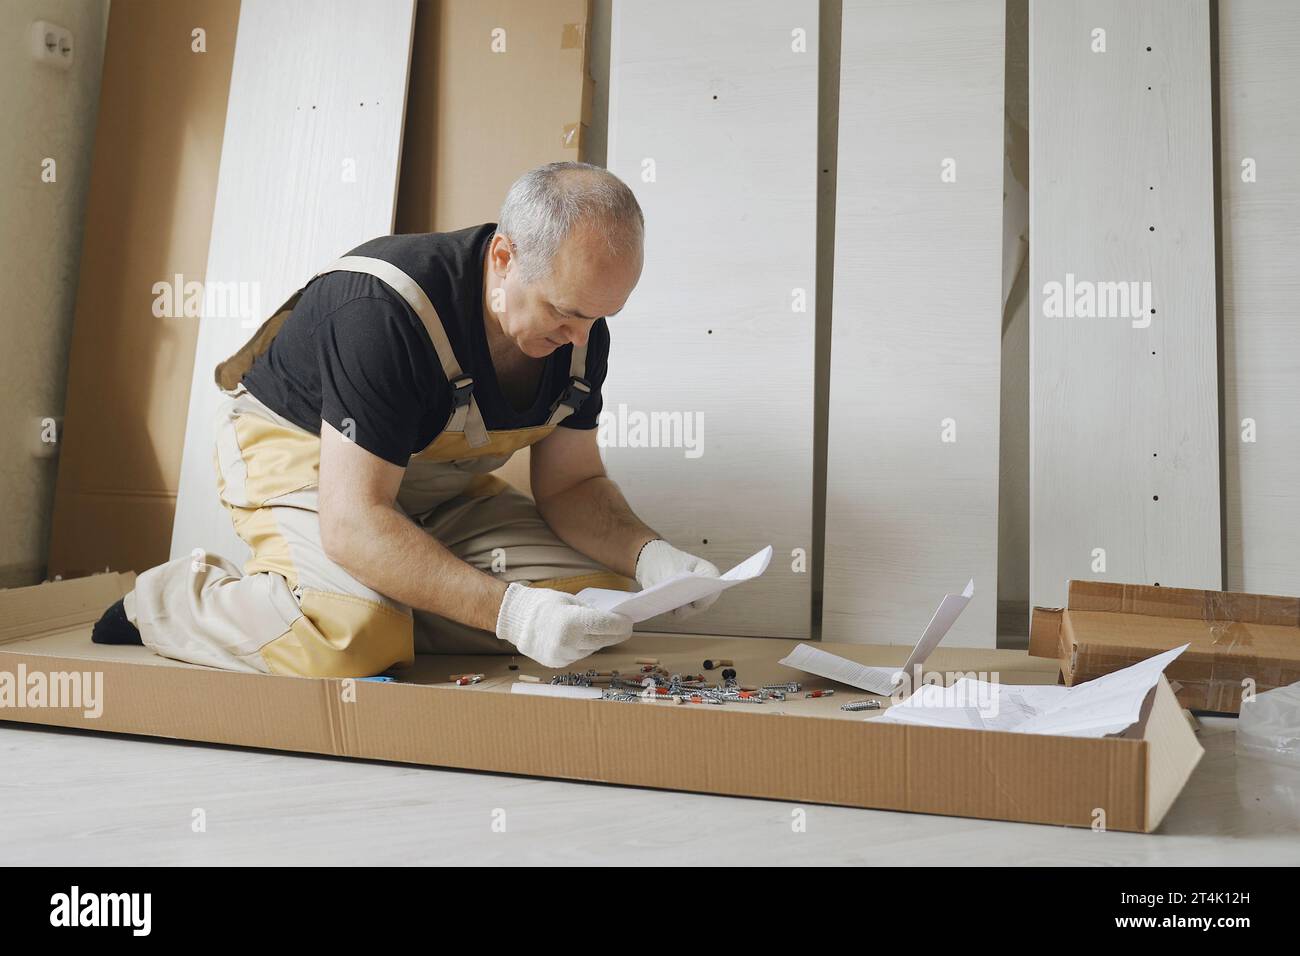 Ein männlicher Arbeiter studiert Anweisungen, bevor er Möbel zusammenbaut. Gesamtplan. Stockfoto